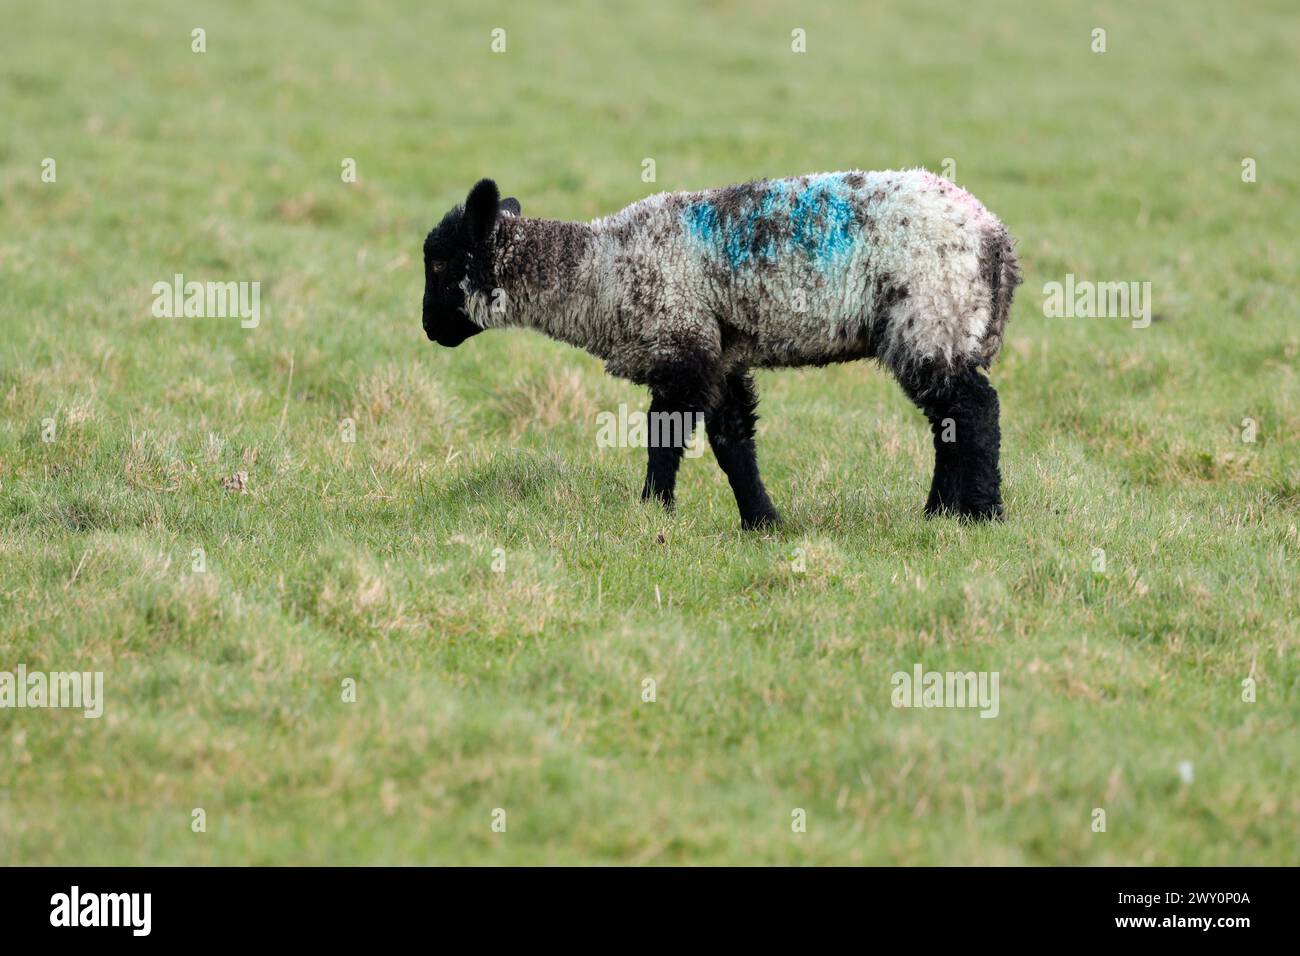 Schwarzes suffolk-Schaf ein einzelnes Lamm mit schwarzem Gesicht und Beinen weißlicher Körper mit dunklen Flecken auf einem seaford-Grasland in der Nähe von Klippen windiger kalter Tag Stockfoto